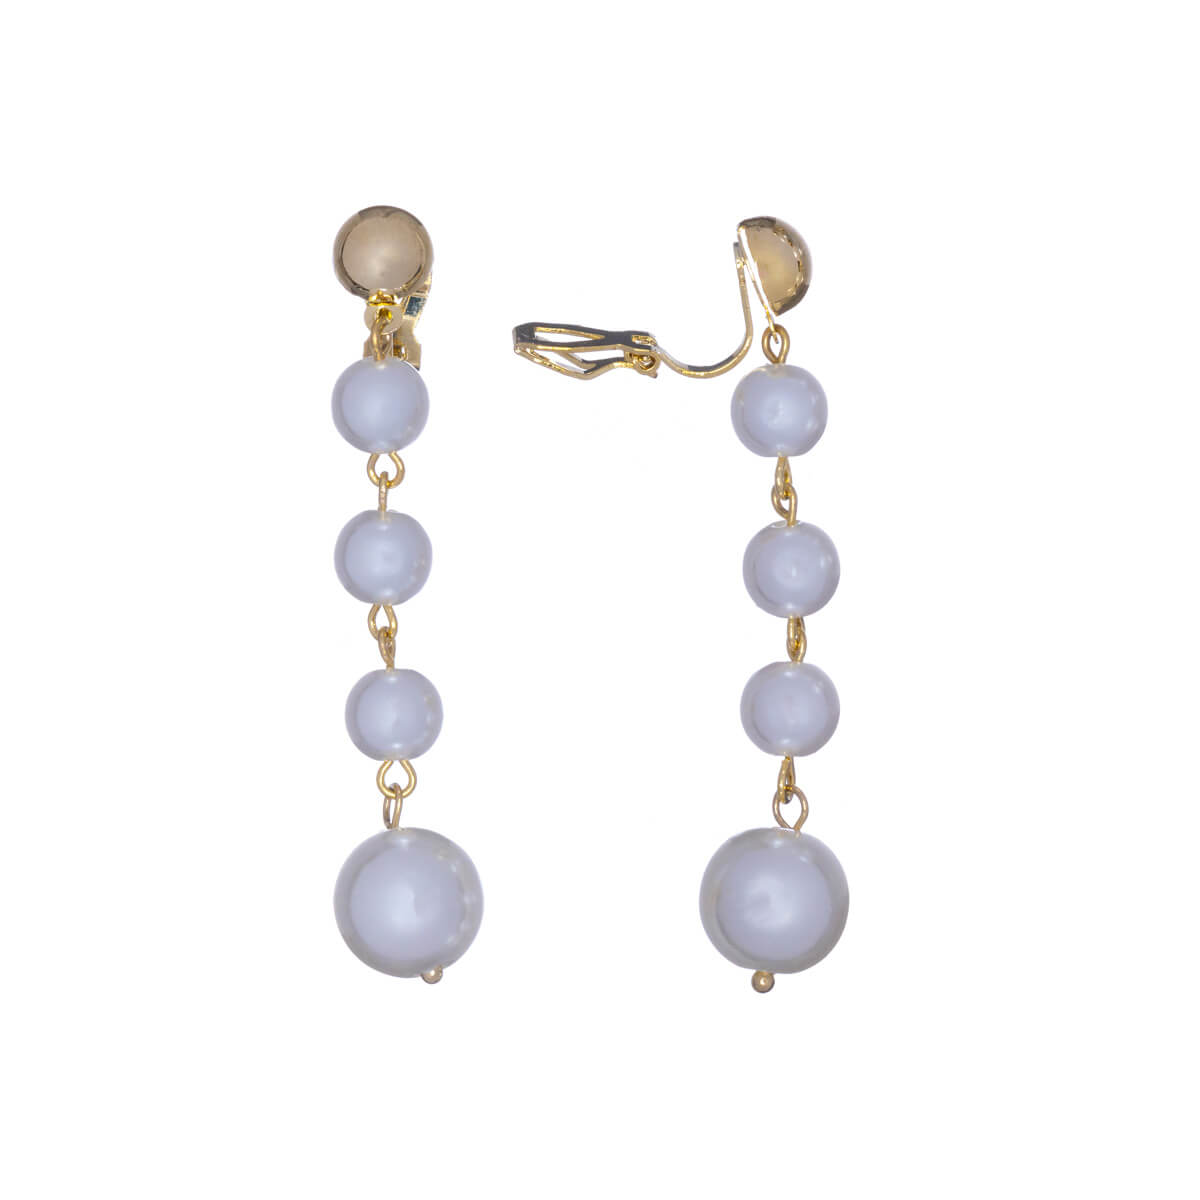 Hanging pearl clip earrings